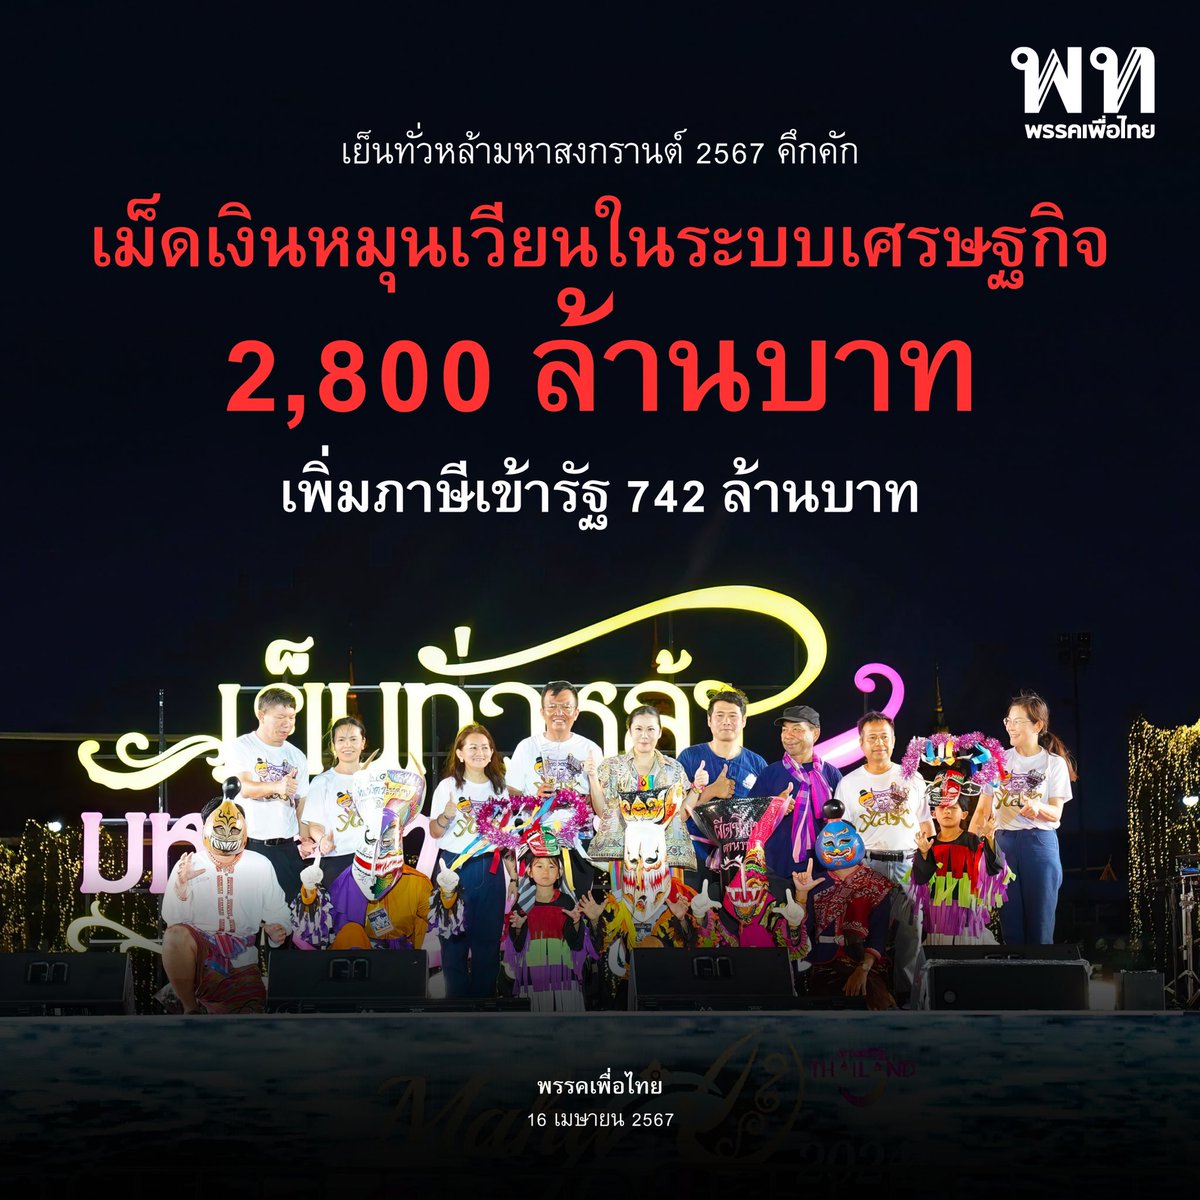 • เย็นทั่วหล้า มหาสงกรานต์ 67 คึกคัก เม็ดเงินหมุนเวียนในระบบเศรษฐกิจ  2,800 ล้านบาท เพิ่มภาษีเข้ารัฐ 742 ล้านบาท • 

ความสำเร็จการจัดงาน Maha Songkran World Water Festival 2024 เย็นทั่วหล้า มหาสงกรานต์ 2567 บริเวณถนนราชดำเนินกลางและพื้นที่ท้องสนามหลวง 

ชัย วัชรงค์…